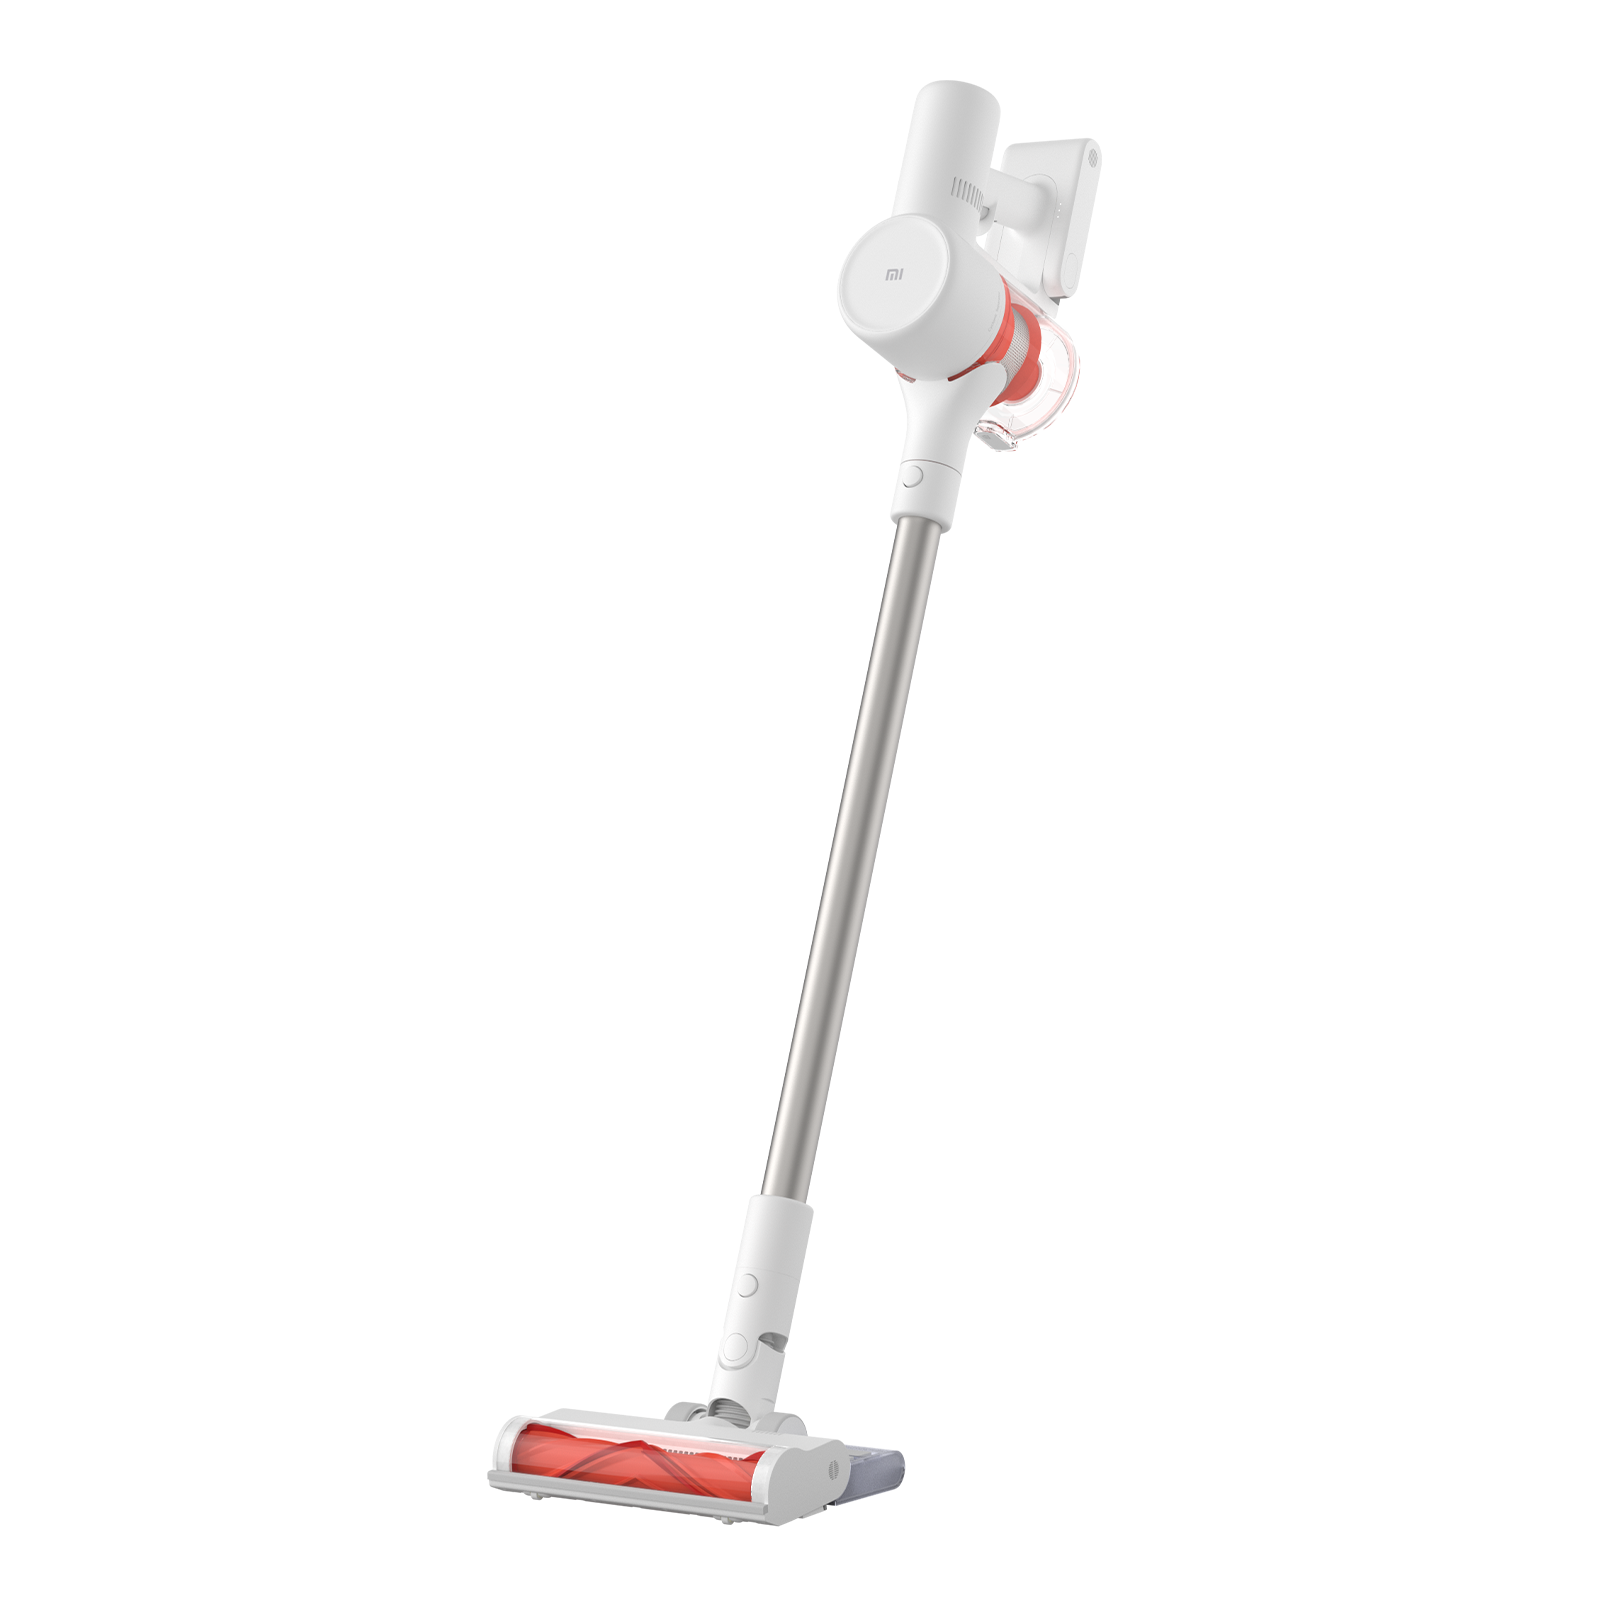 Xiaomi Aspiradora inalámbrica Mi Vacuum Cleaner G10 DE Version (4 modos:  Eco, Estándar, Máx, Automático, 79 dB, filtro lavable de 5 etapas, pantalla